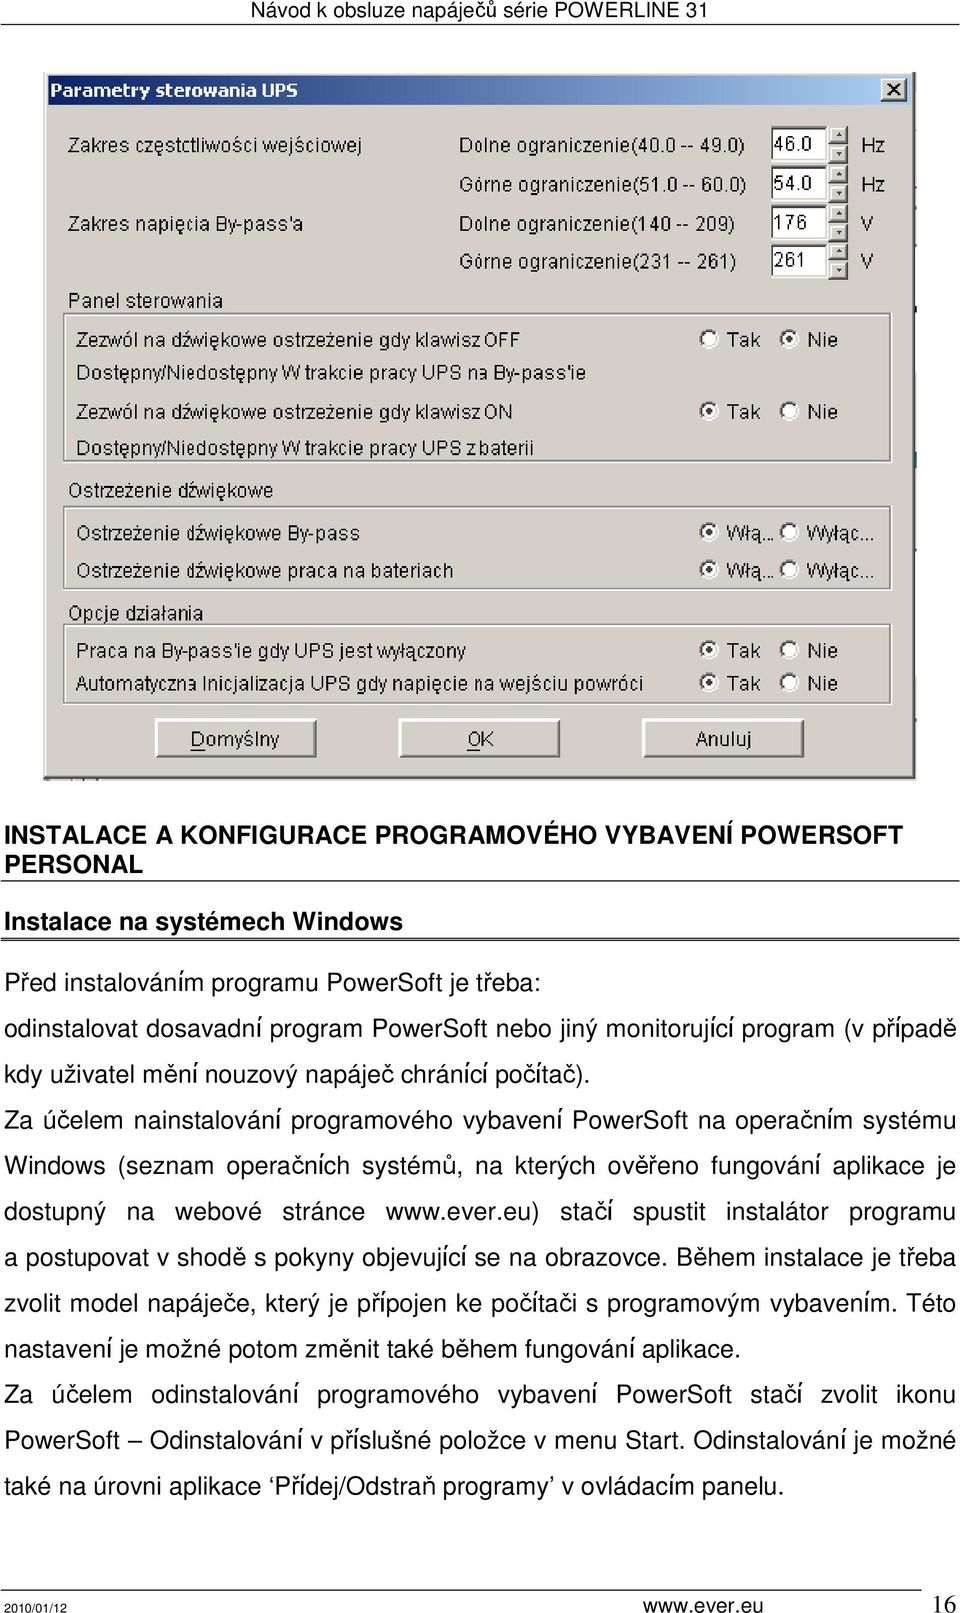 Za účelem nainstalovánί programového vybavenί PowerSoft na operačnίm systému Windows (seznam operačnίch systémů, na kterých ověřeno fungovánί aplikace je dostupný na webové stránce www.ever.